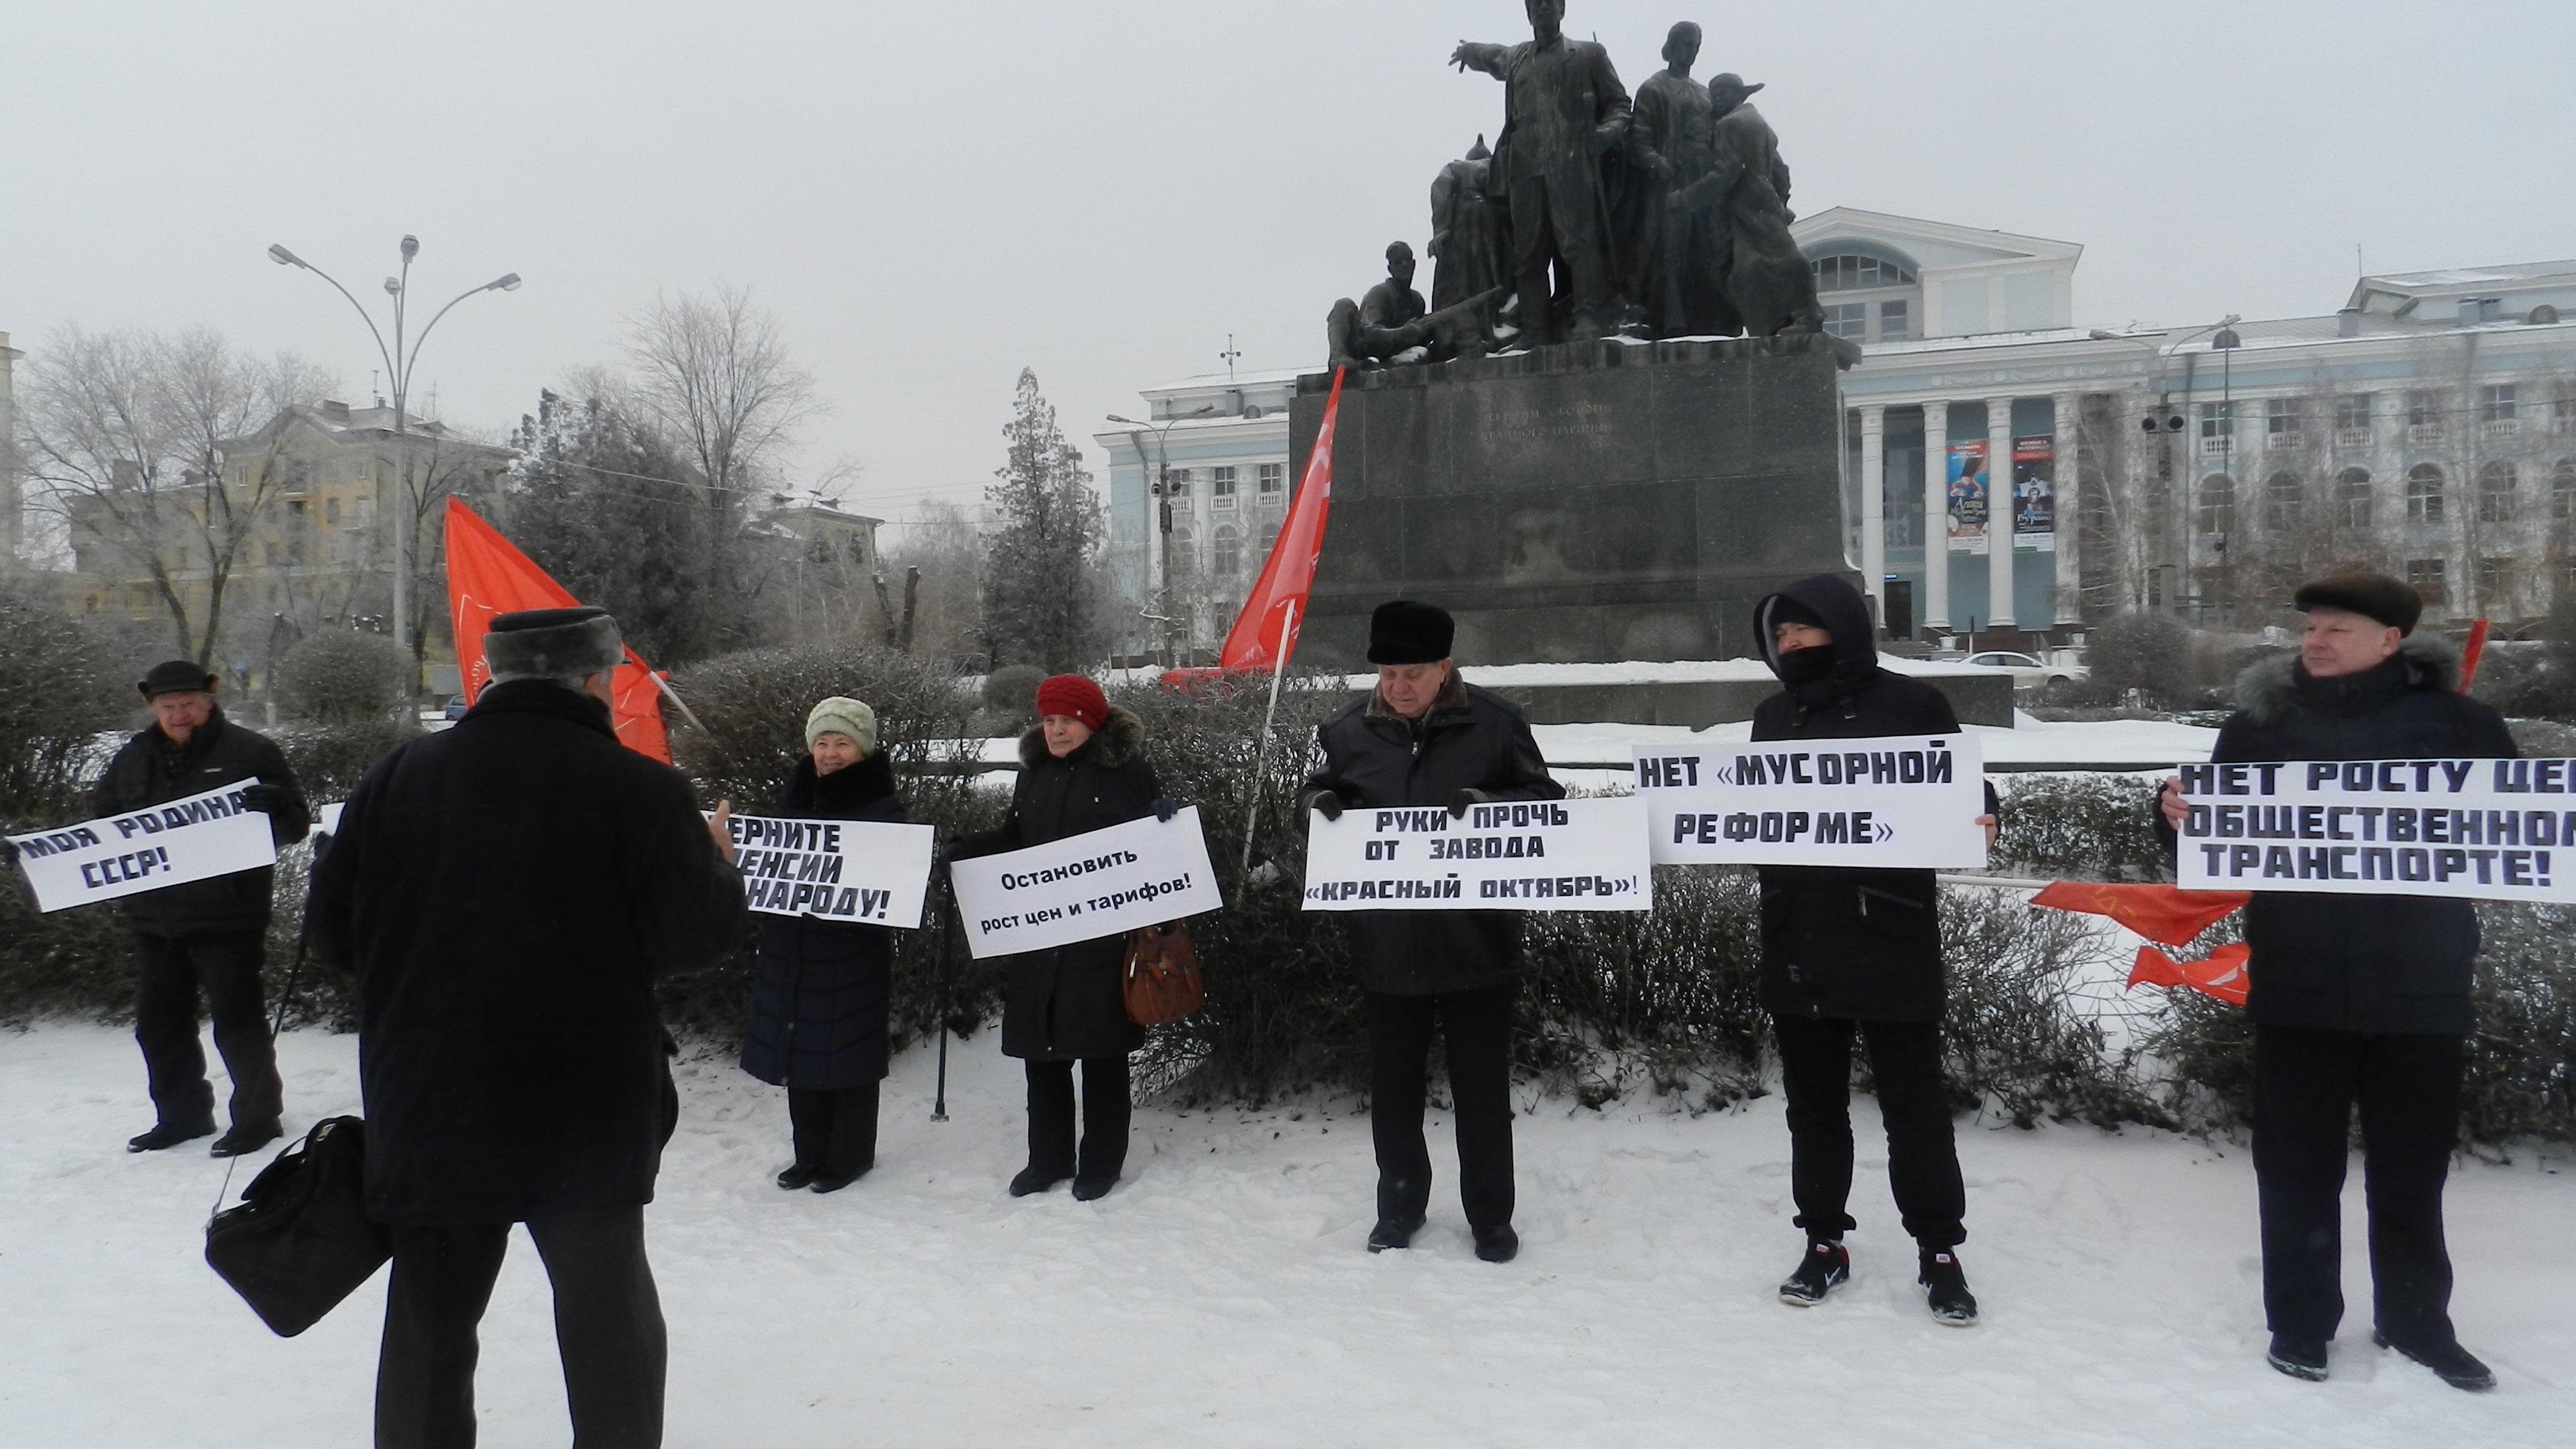 Пикет коммунистов против мусорной реформы в Волгограде, 1 февраля 2019 года. Фото Татьяны Филимоновой для "Кавказского узла"